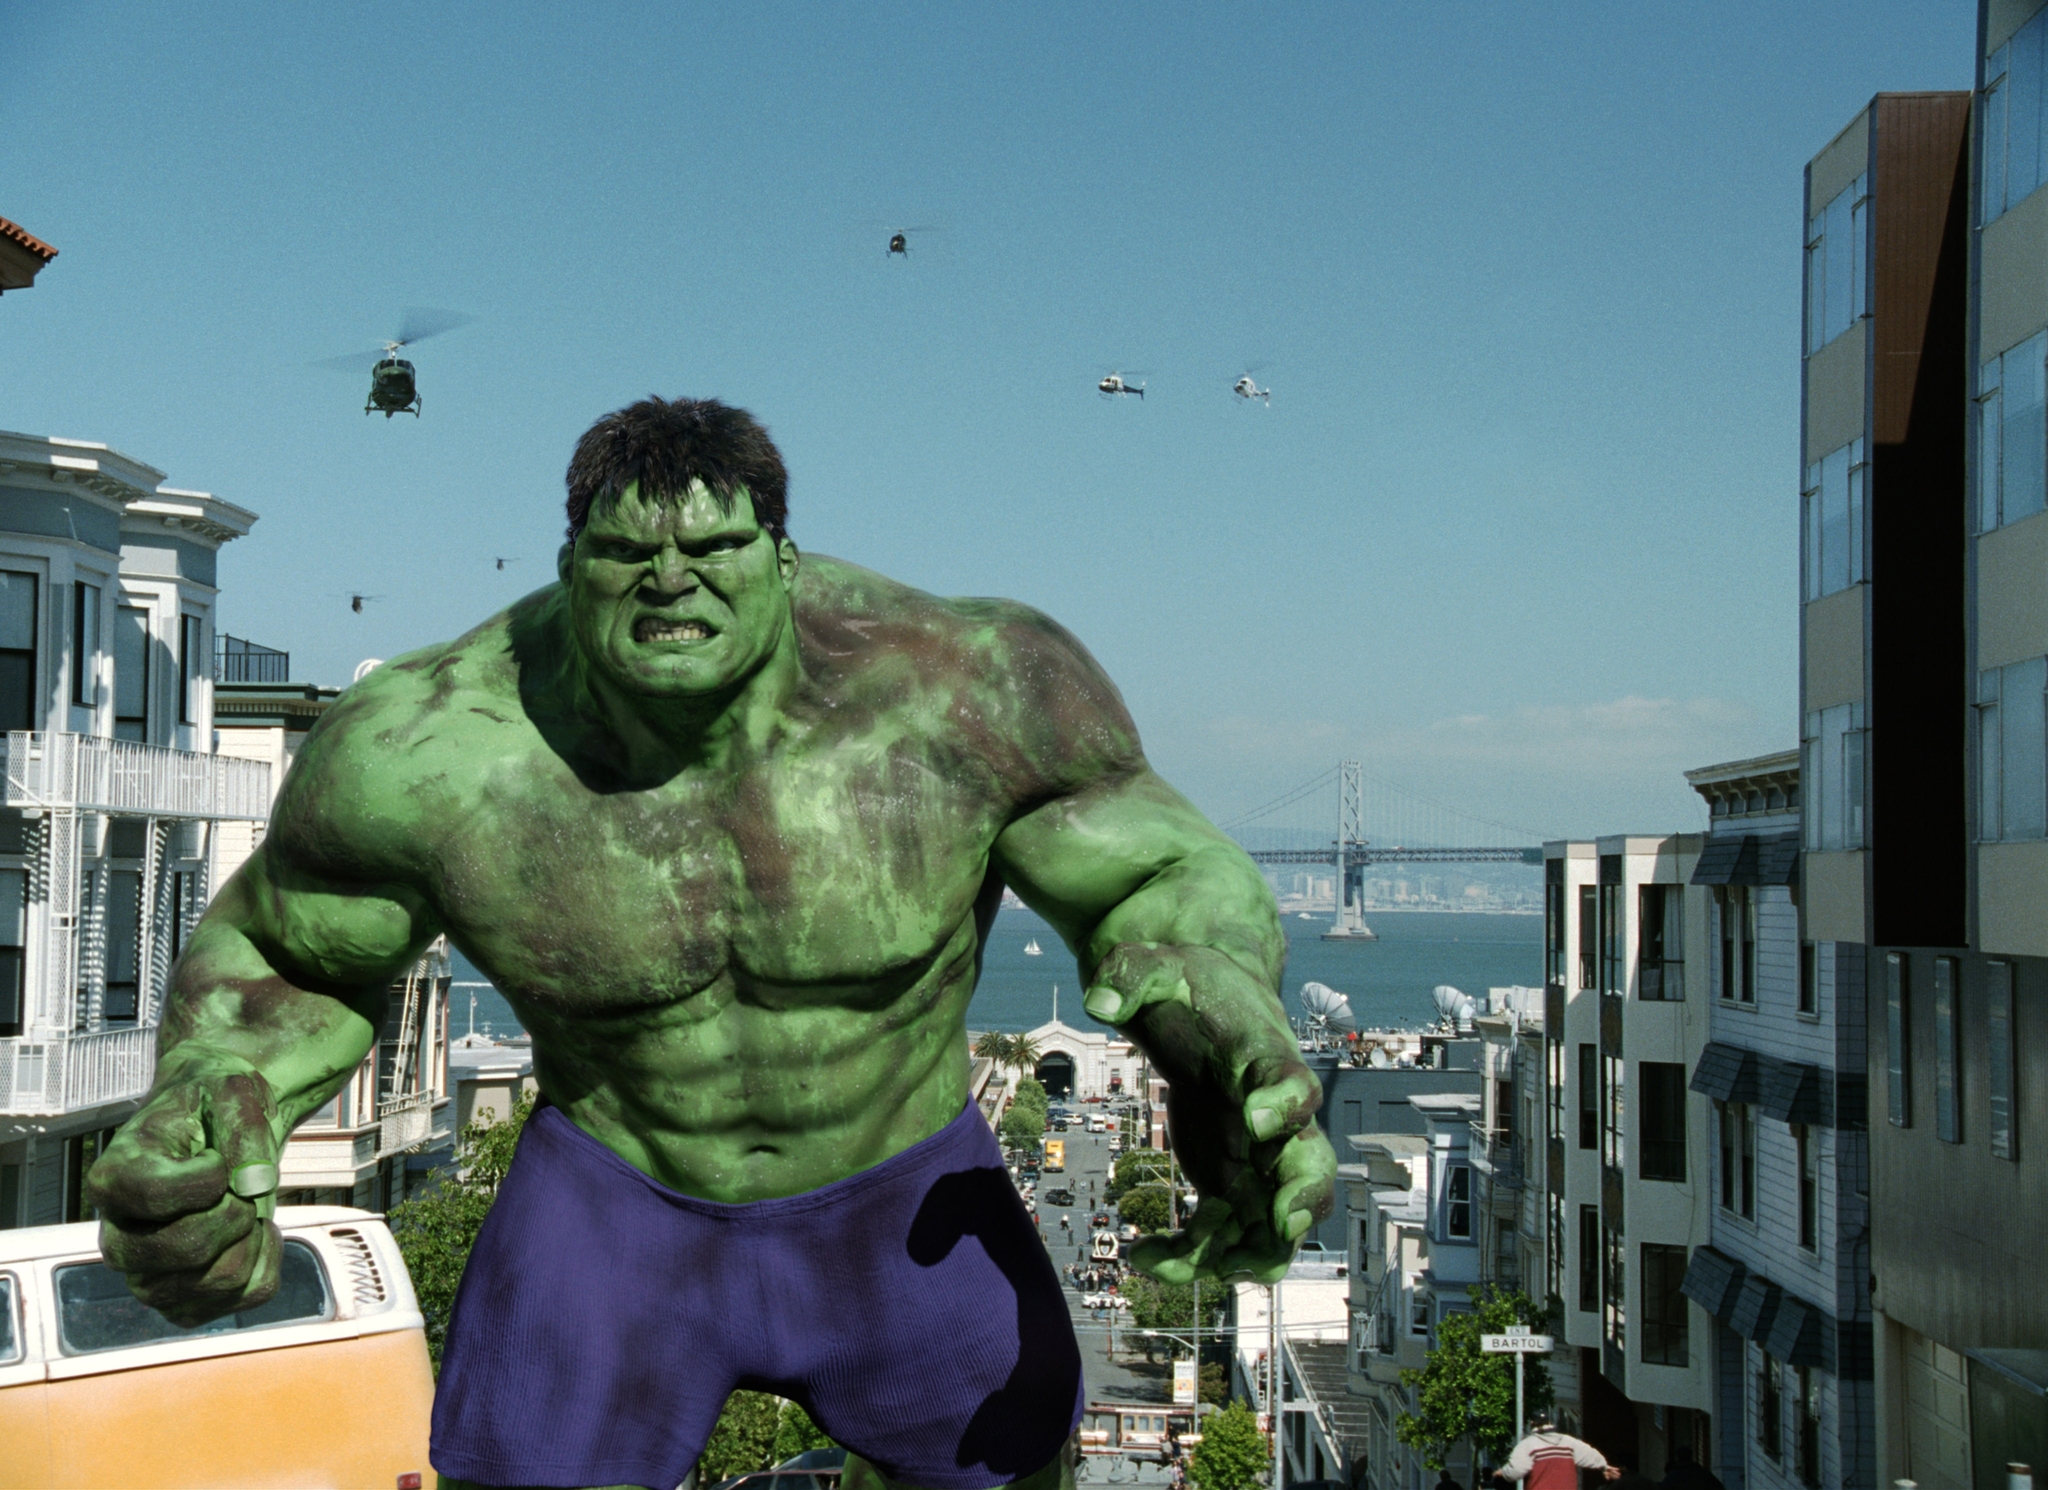 Hulk: come finisce? La spiegazione del finale del film di Ang Lee